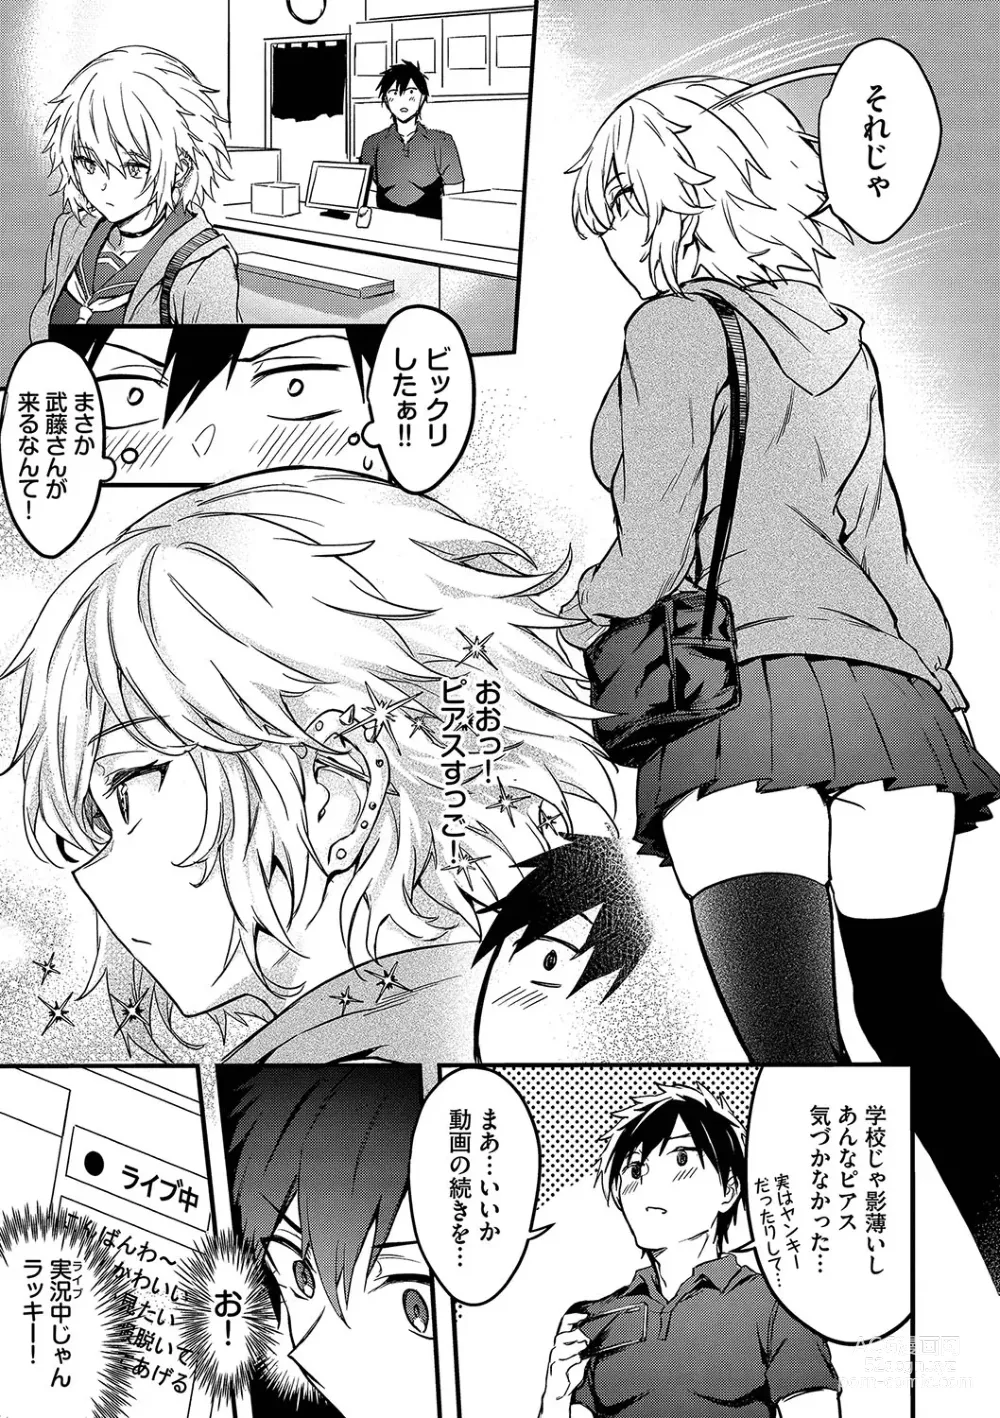 Page 6 of manga Bitch Bitch